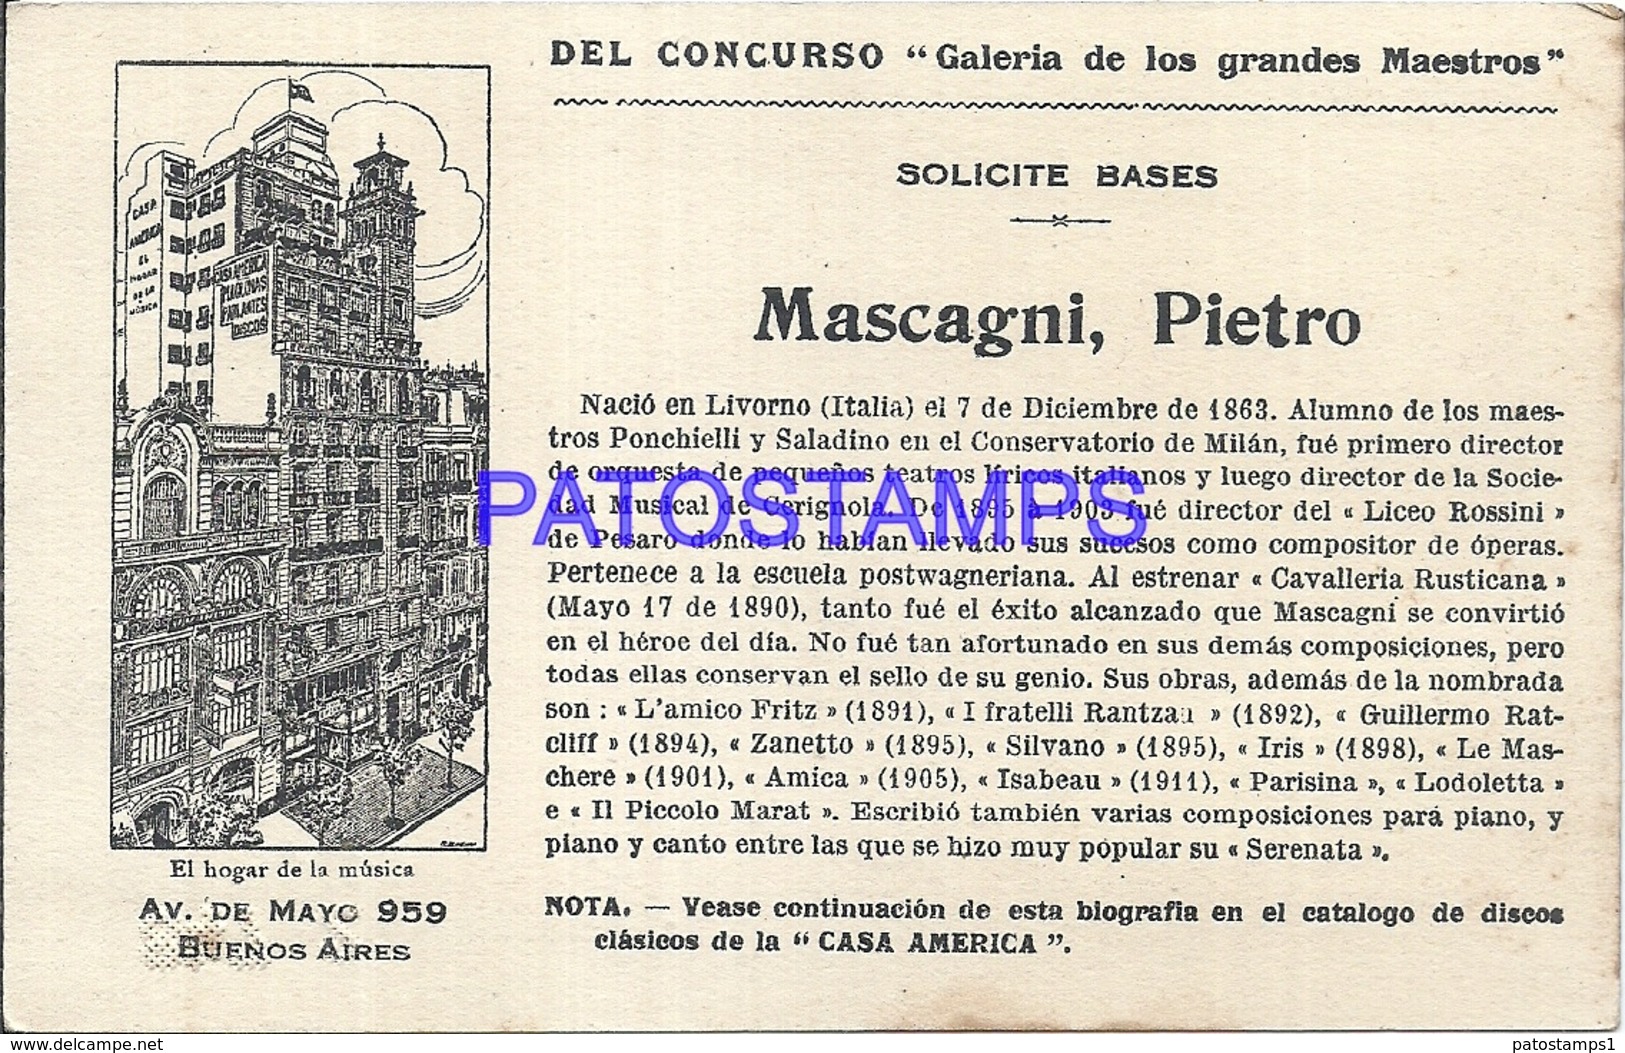 91002 PUBLICTY COMMERCIAL CASA AMERICA EL HOGAR DE LA MUSICA BS AS ARTIST MASCAGNI PIETRO LIRICO NO POSTAL POSTCARD - Werbepostkarten